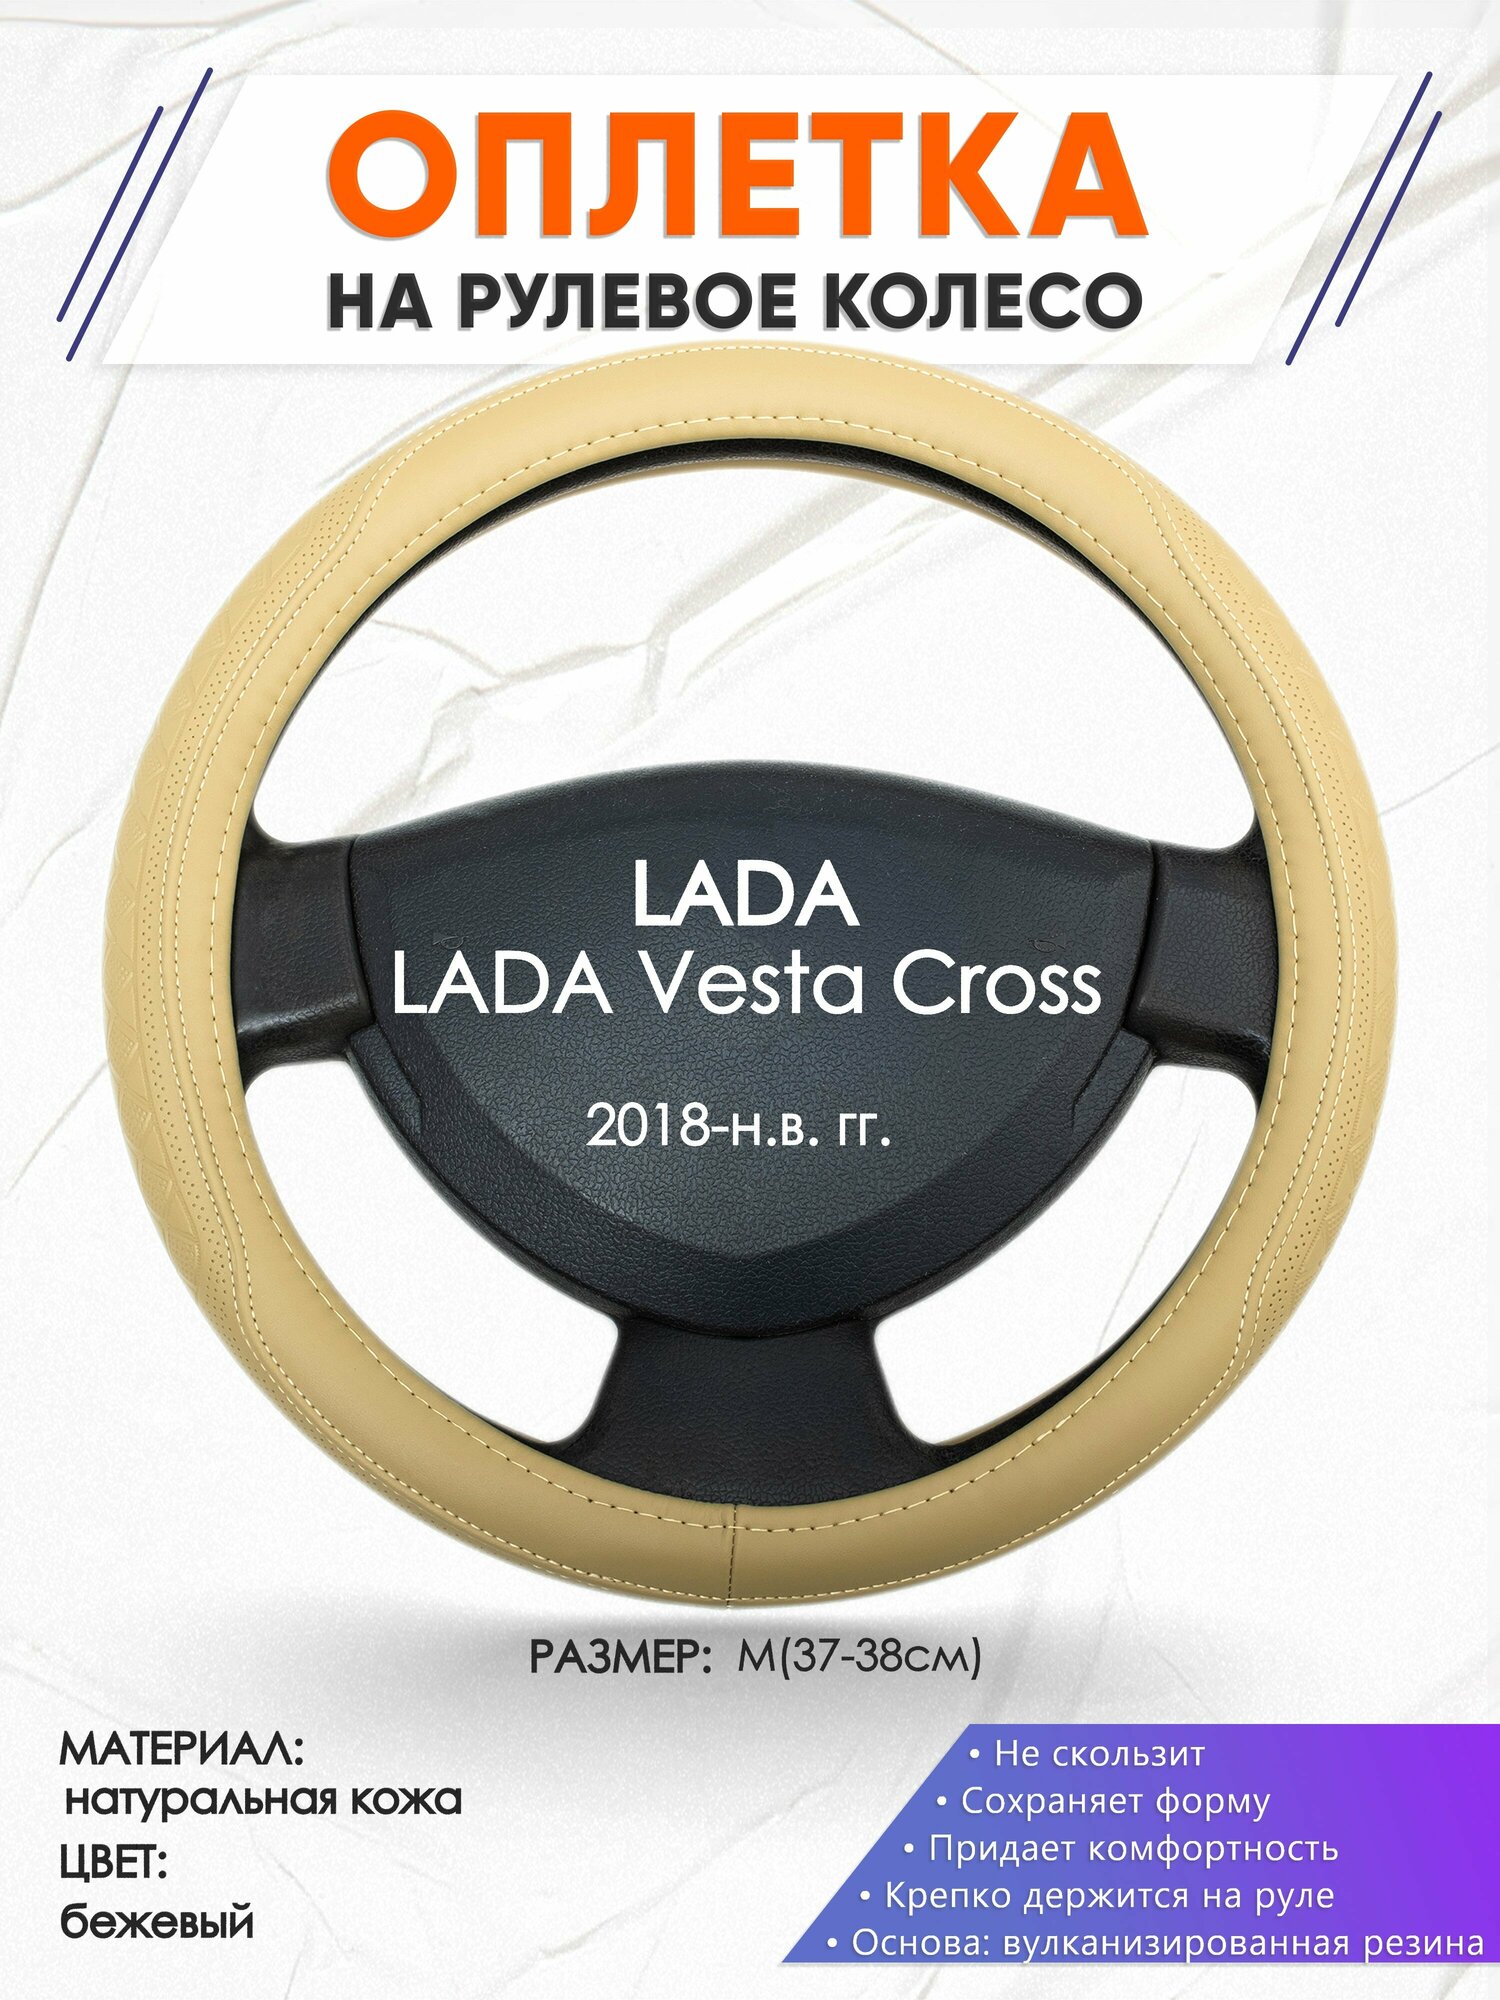 Оплетка наруль для LADA Vesta Cross(Лада Веста кросс) 2018-н. в. годов выпуска, размер M(37-38см), Натуральная кожа 91